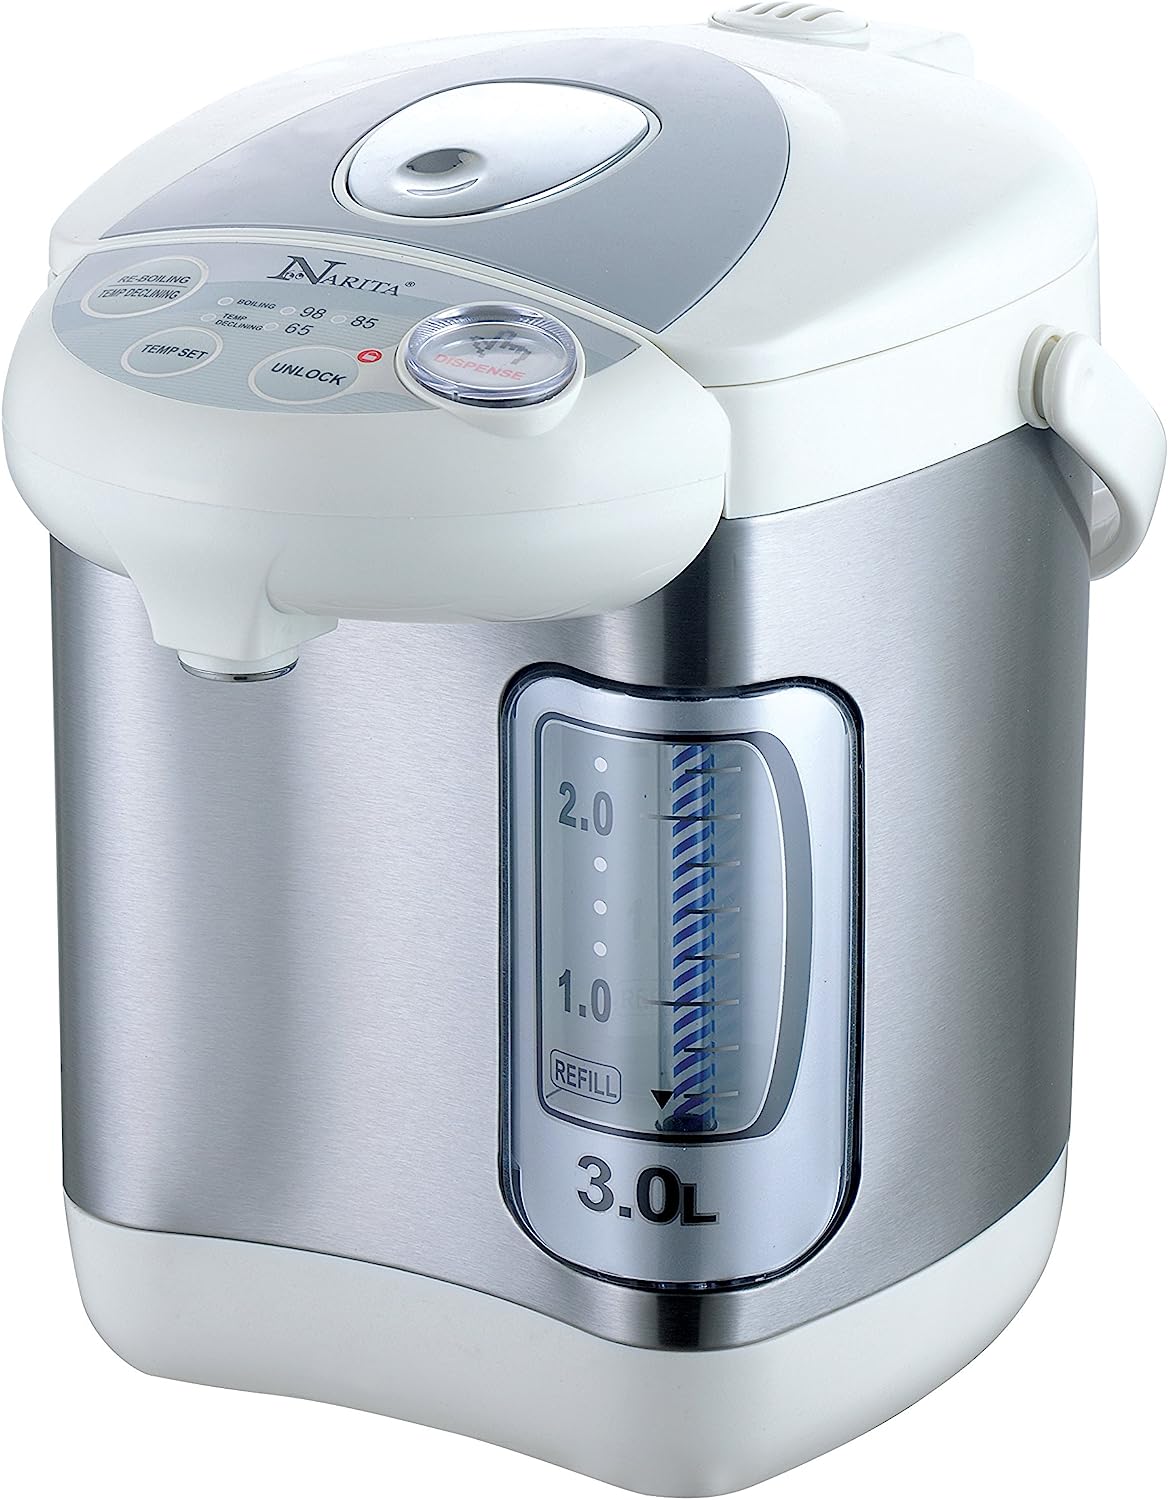 Narita Hot Water Dispenser, 3.0 Liters